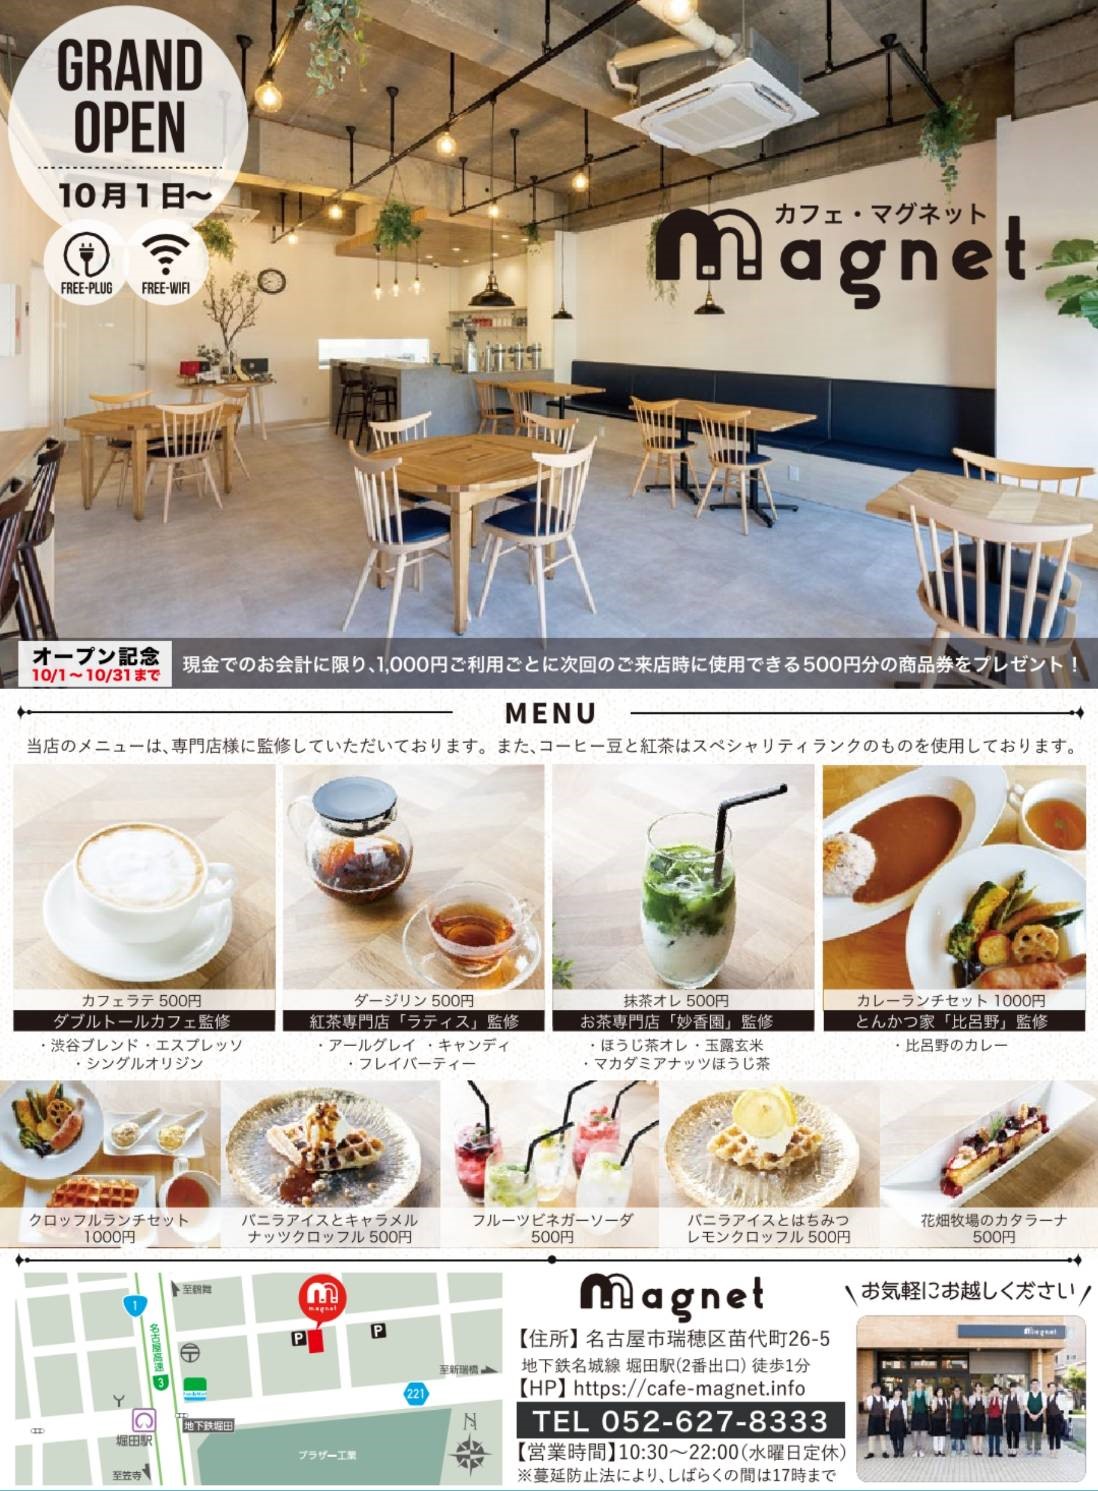 知的障がい者の就労を目的としたカフェ「magnet」が愛知県名古屋市に１０月１日グランドオープンのサブ画像5